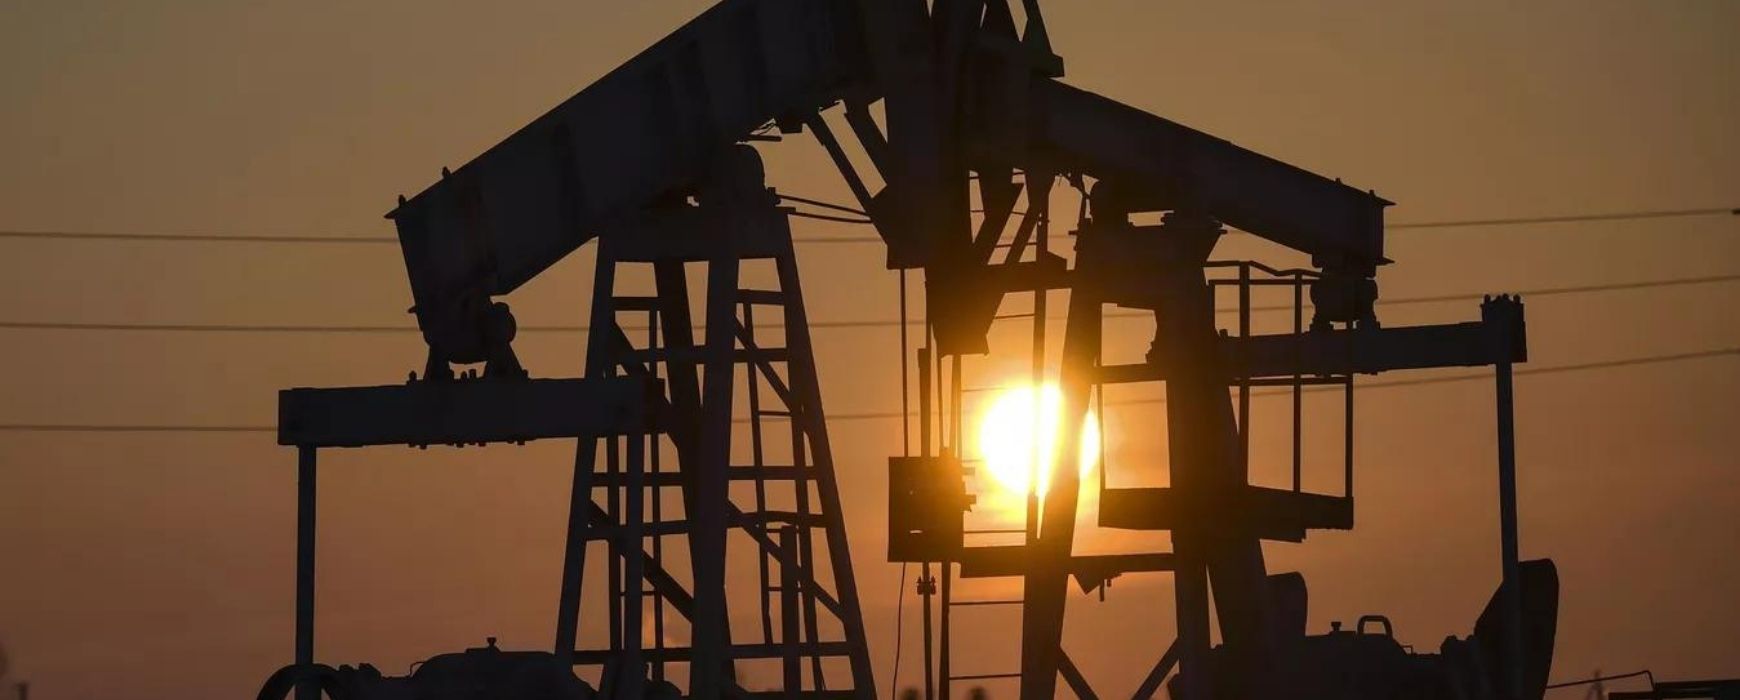 Σε πετρέλαιο και αέριο «ρίχνουν» λεφτά οι τράπεζες παρά την υπόσχεση για «πράσινη στροφή»